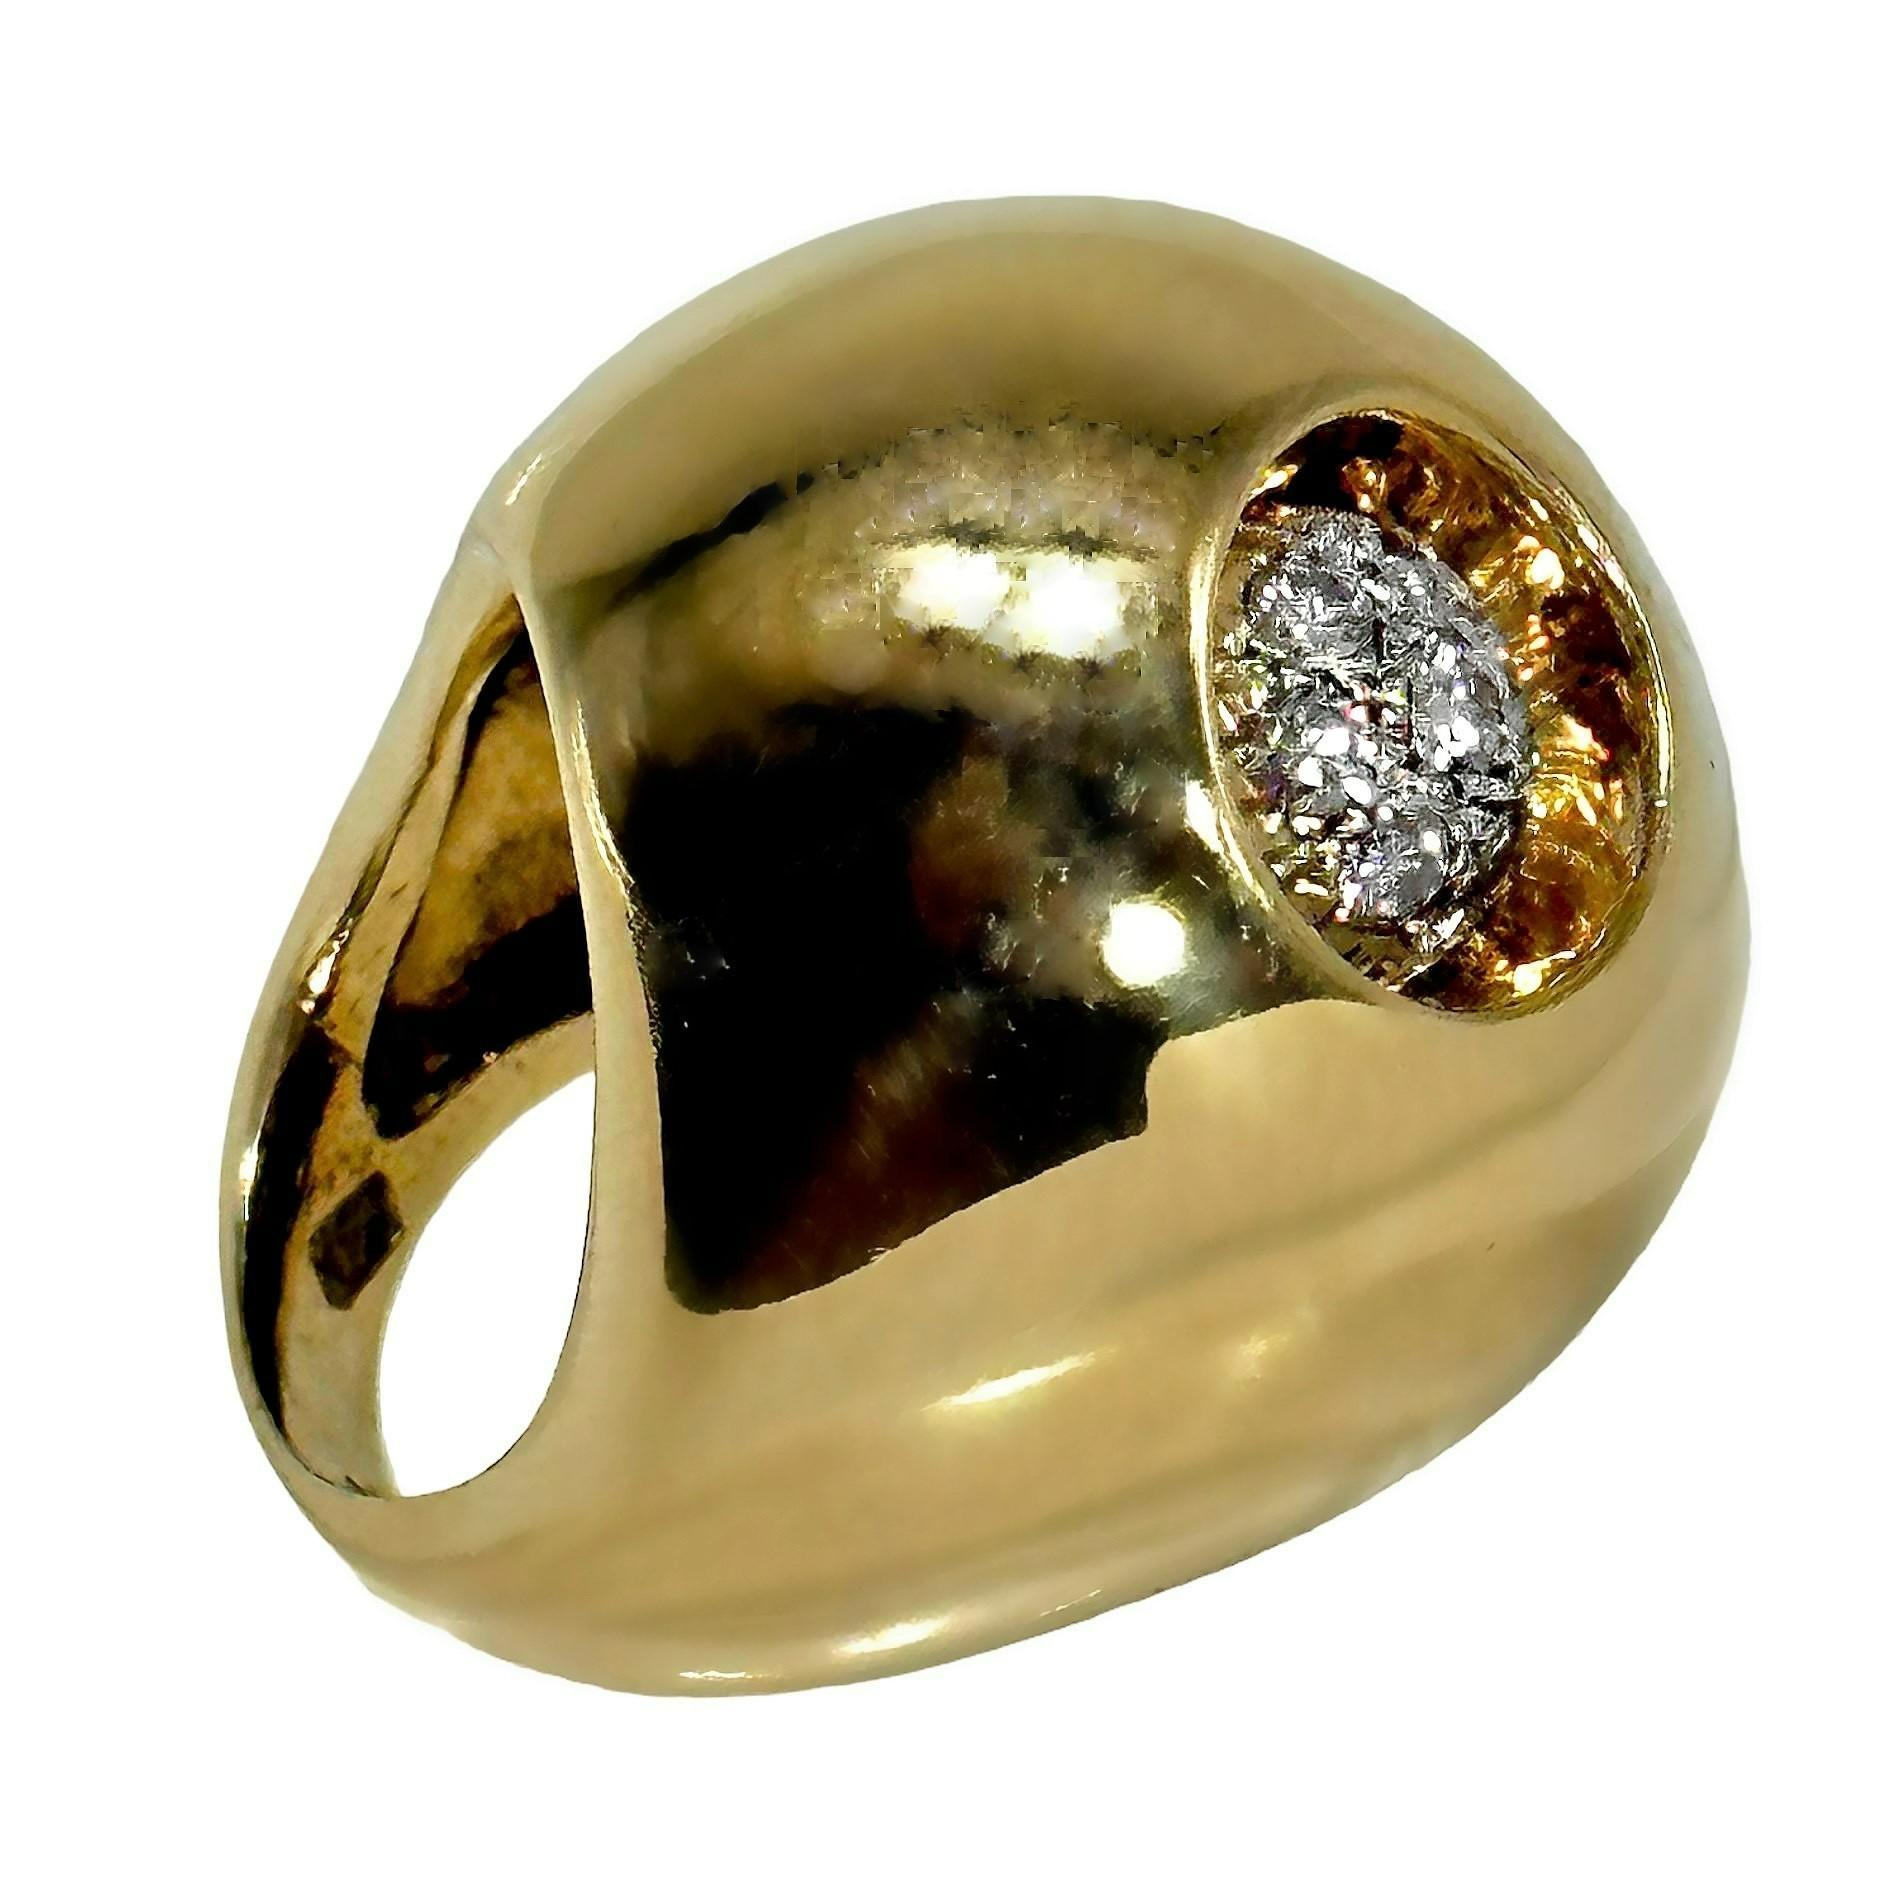 Dieser mächtige modernistische Ring aus 14 Karat Gelbgold und Diamanten hat eine Kuppel, die mehr als 1/2 Zoll über den Finger ragt, eine Länge von über 1 1/8 Zoll und eine Breite von 1 Zoll. An einer Seite befindet sich tief versenkt eine Gruppe